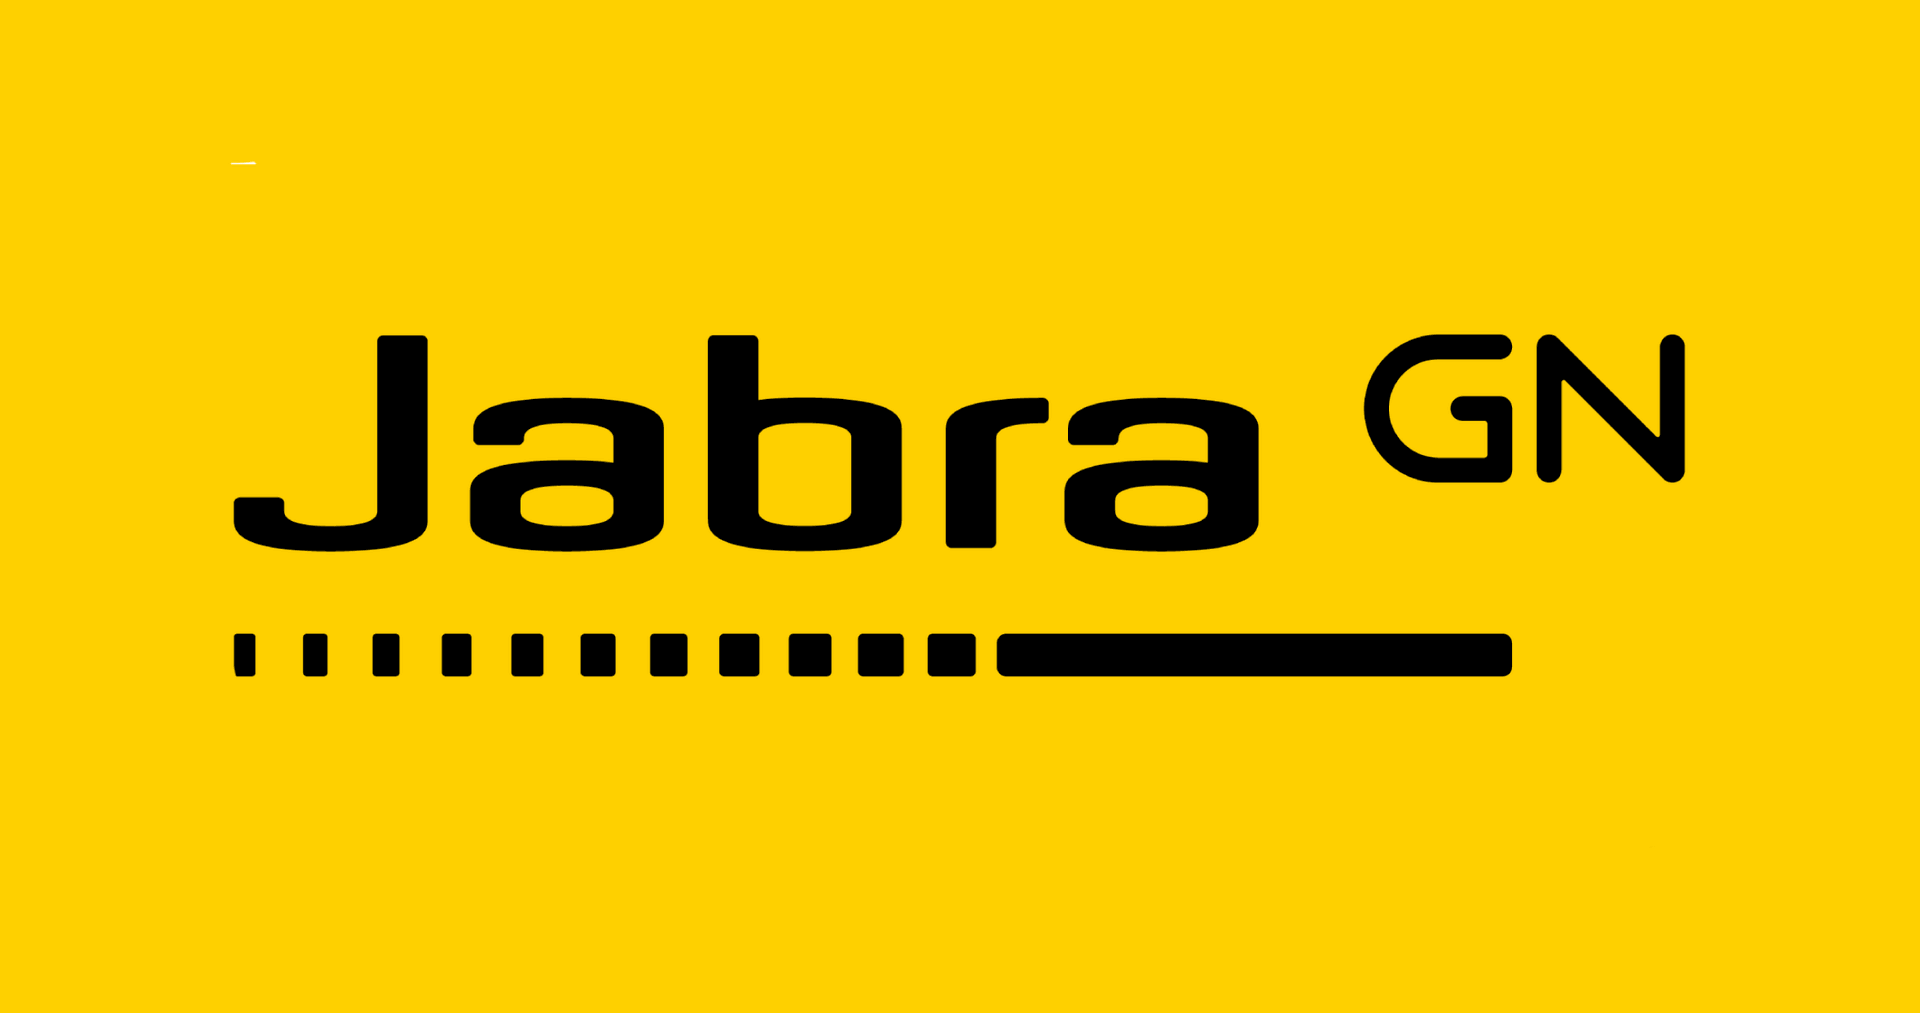 Brand: Jabra